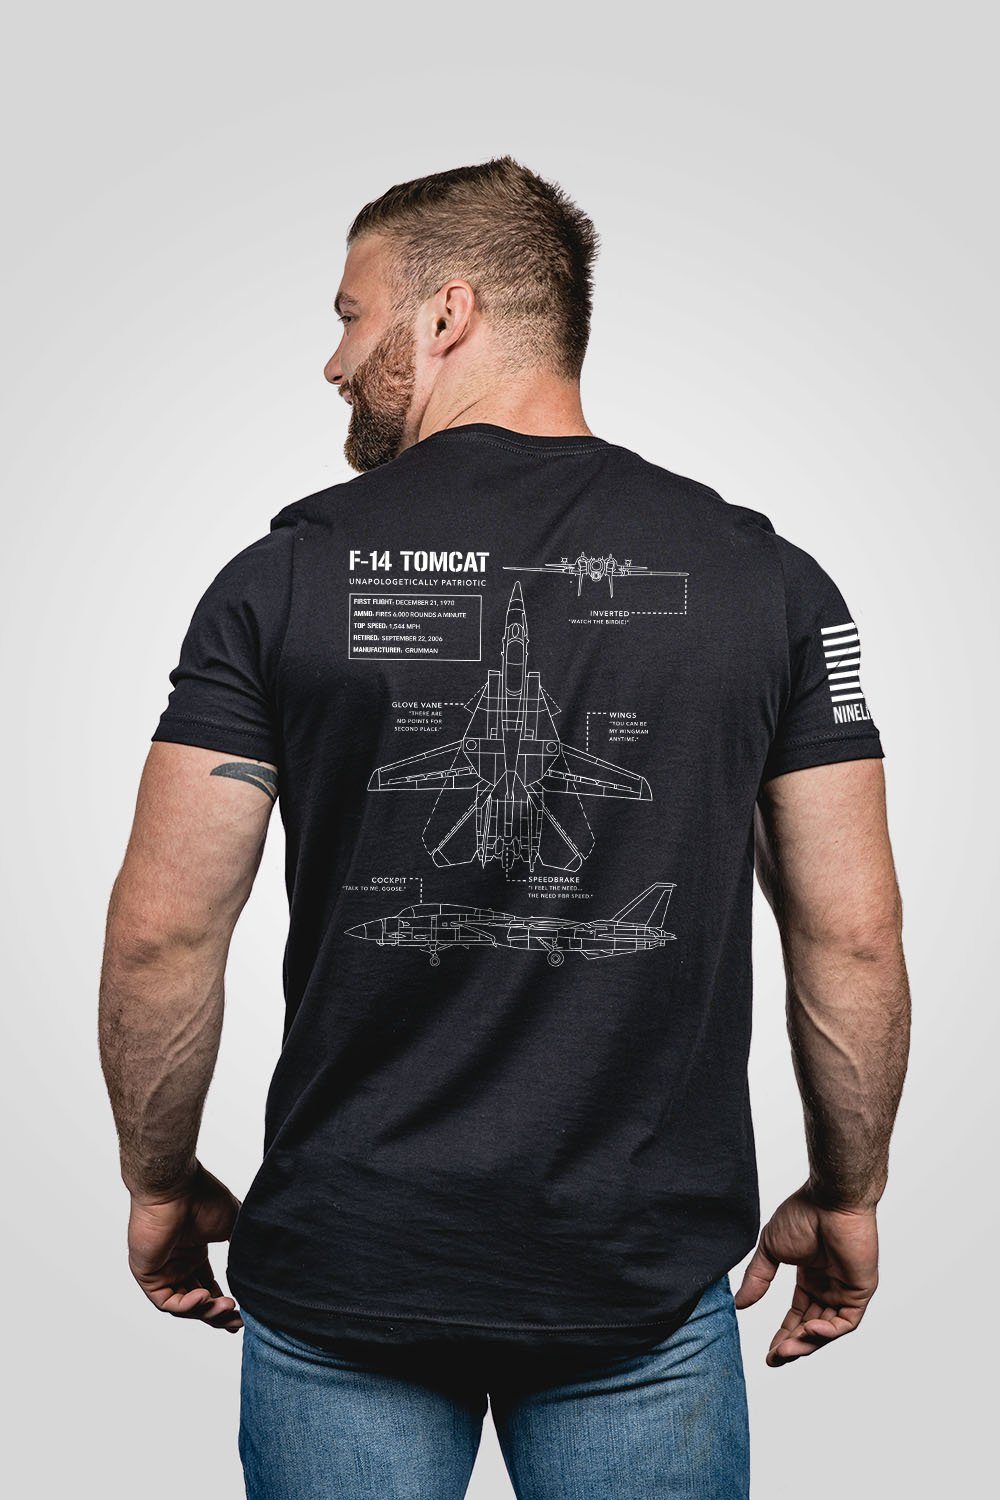 Image of Men's T-Shirt - F-14 Tomcat Schematic